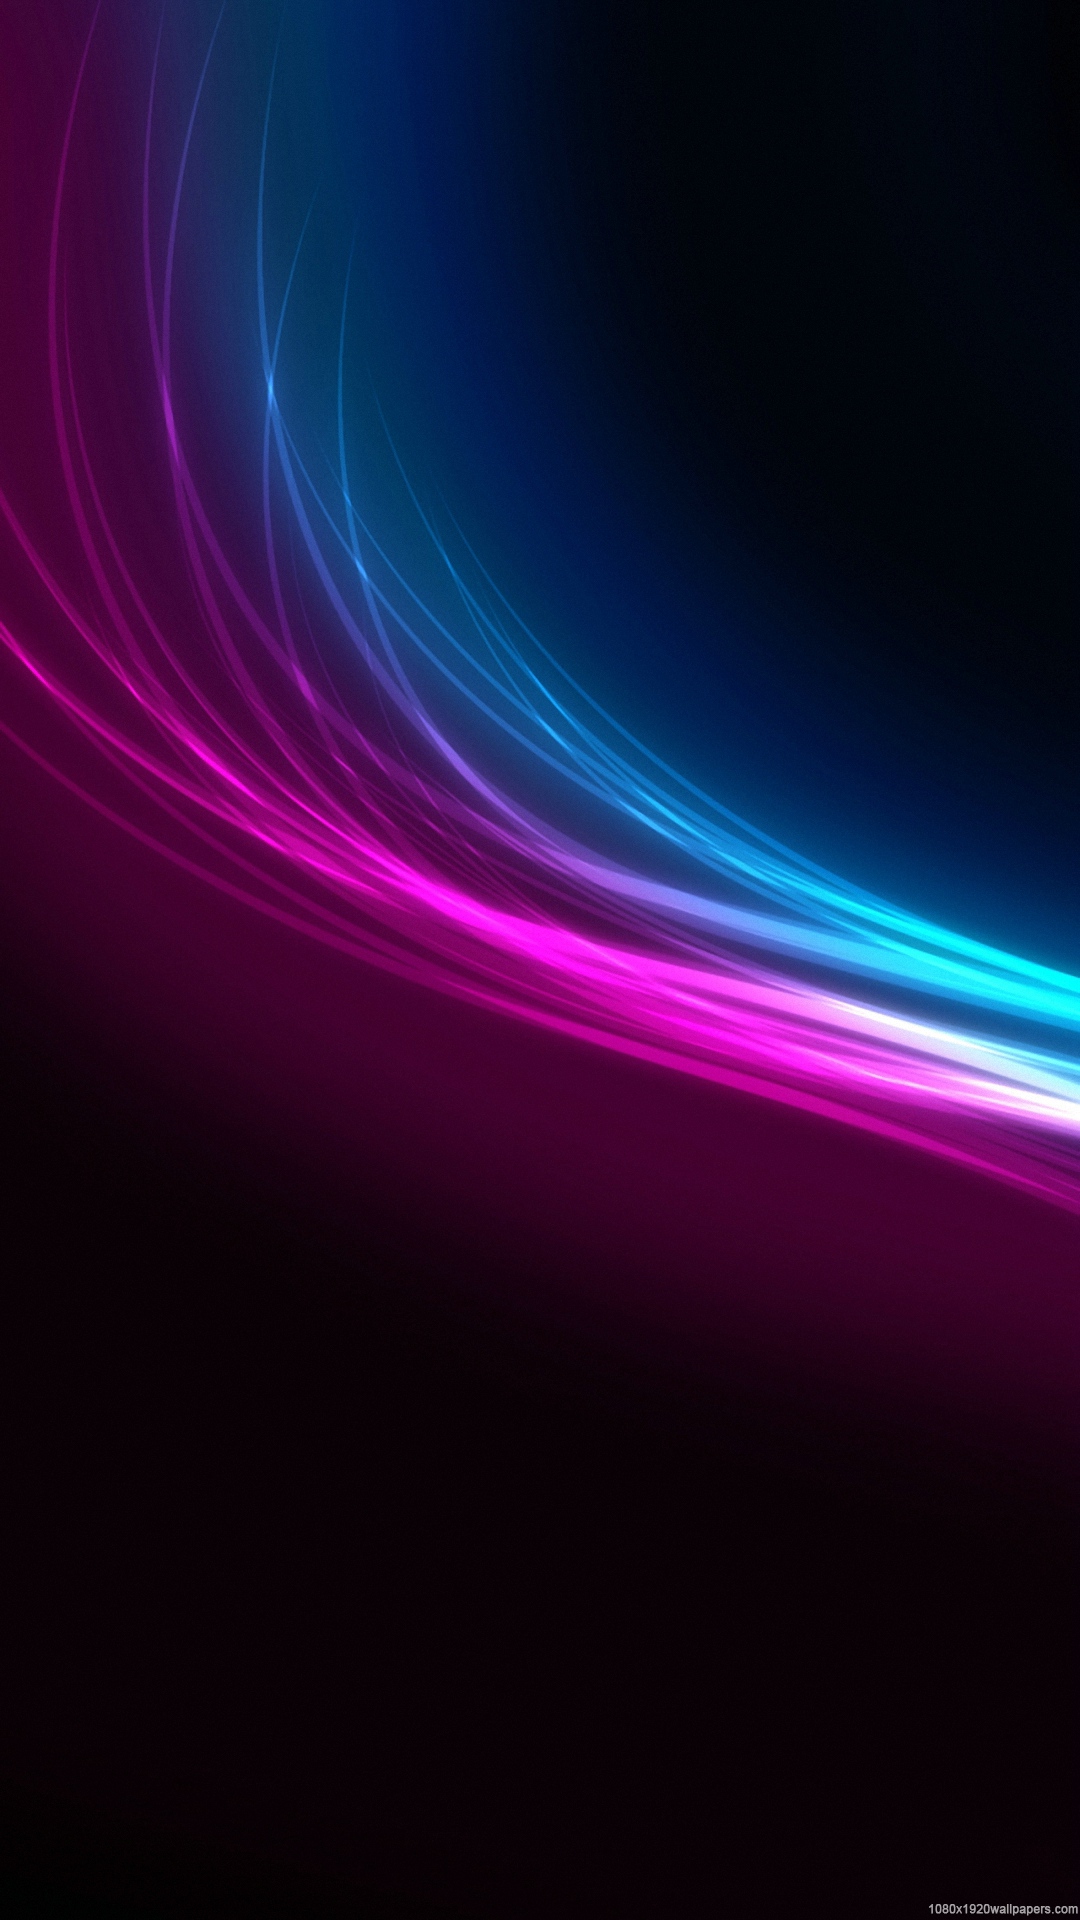 colorido fondo de pantalla hd,azul,violeta,púrpura,ligero,rosado